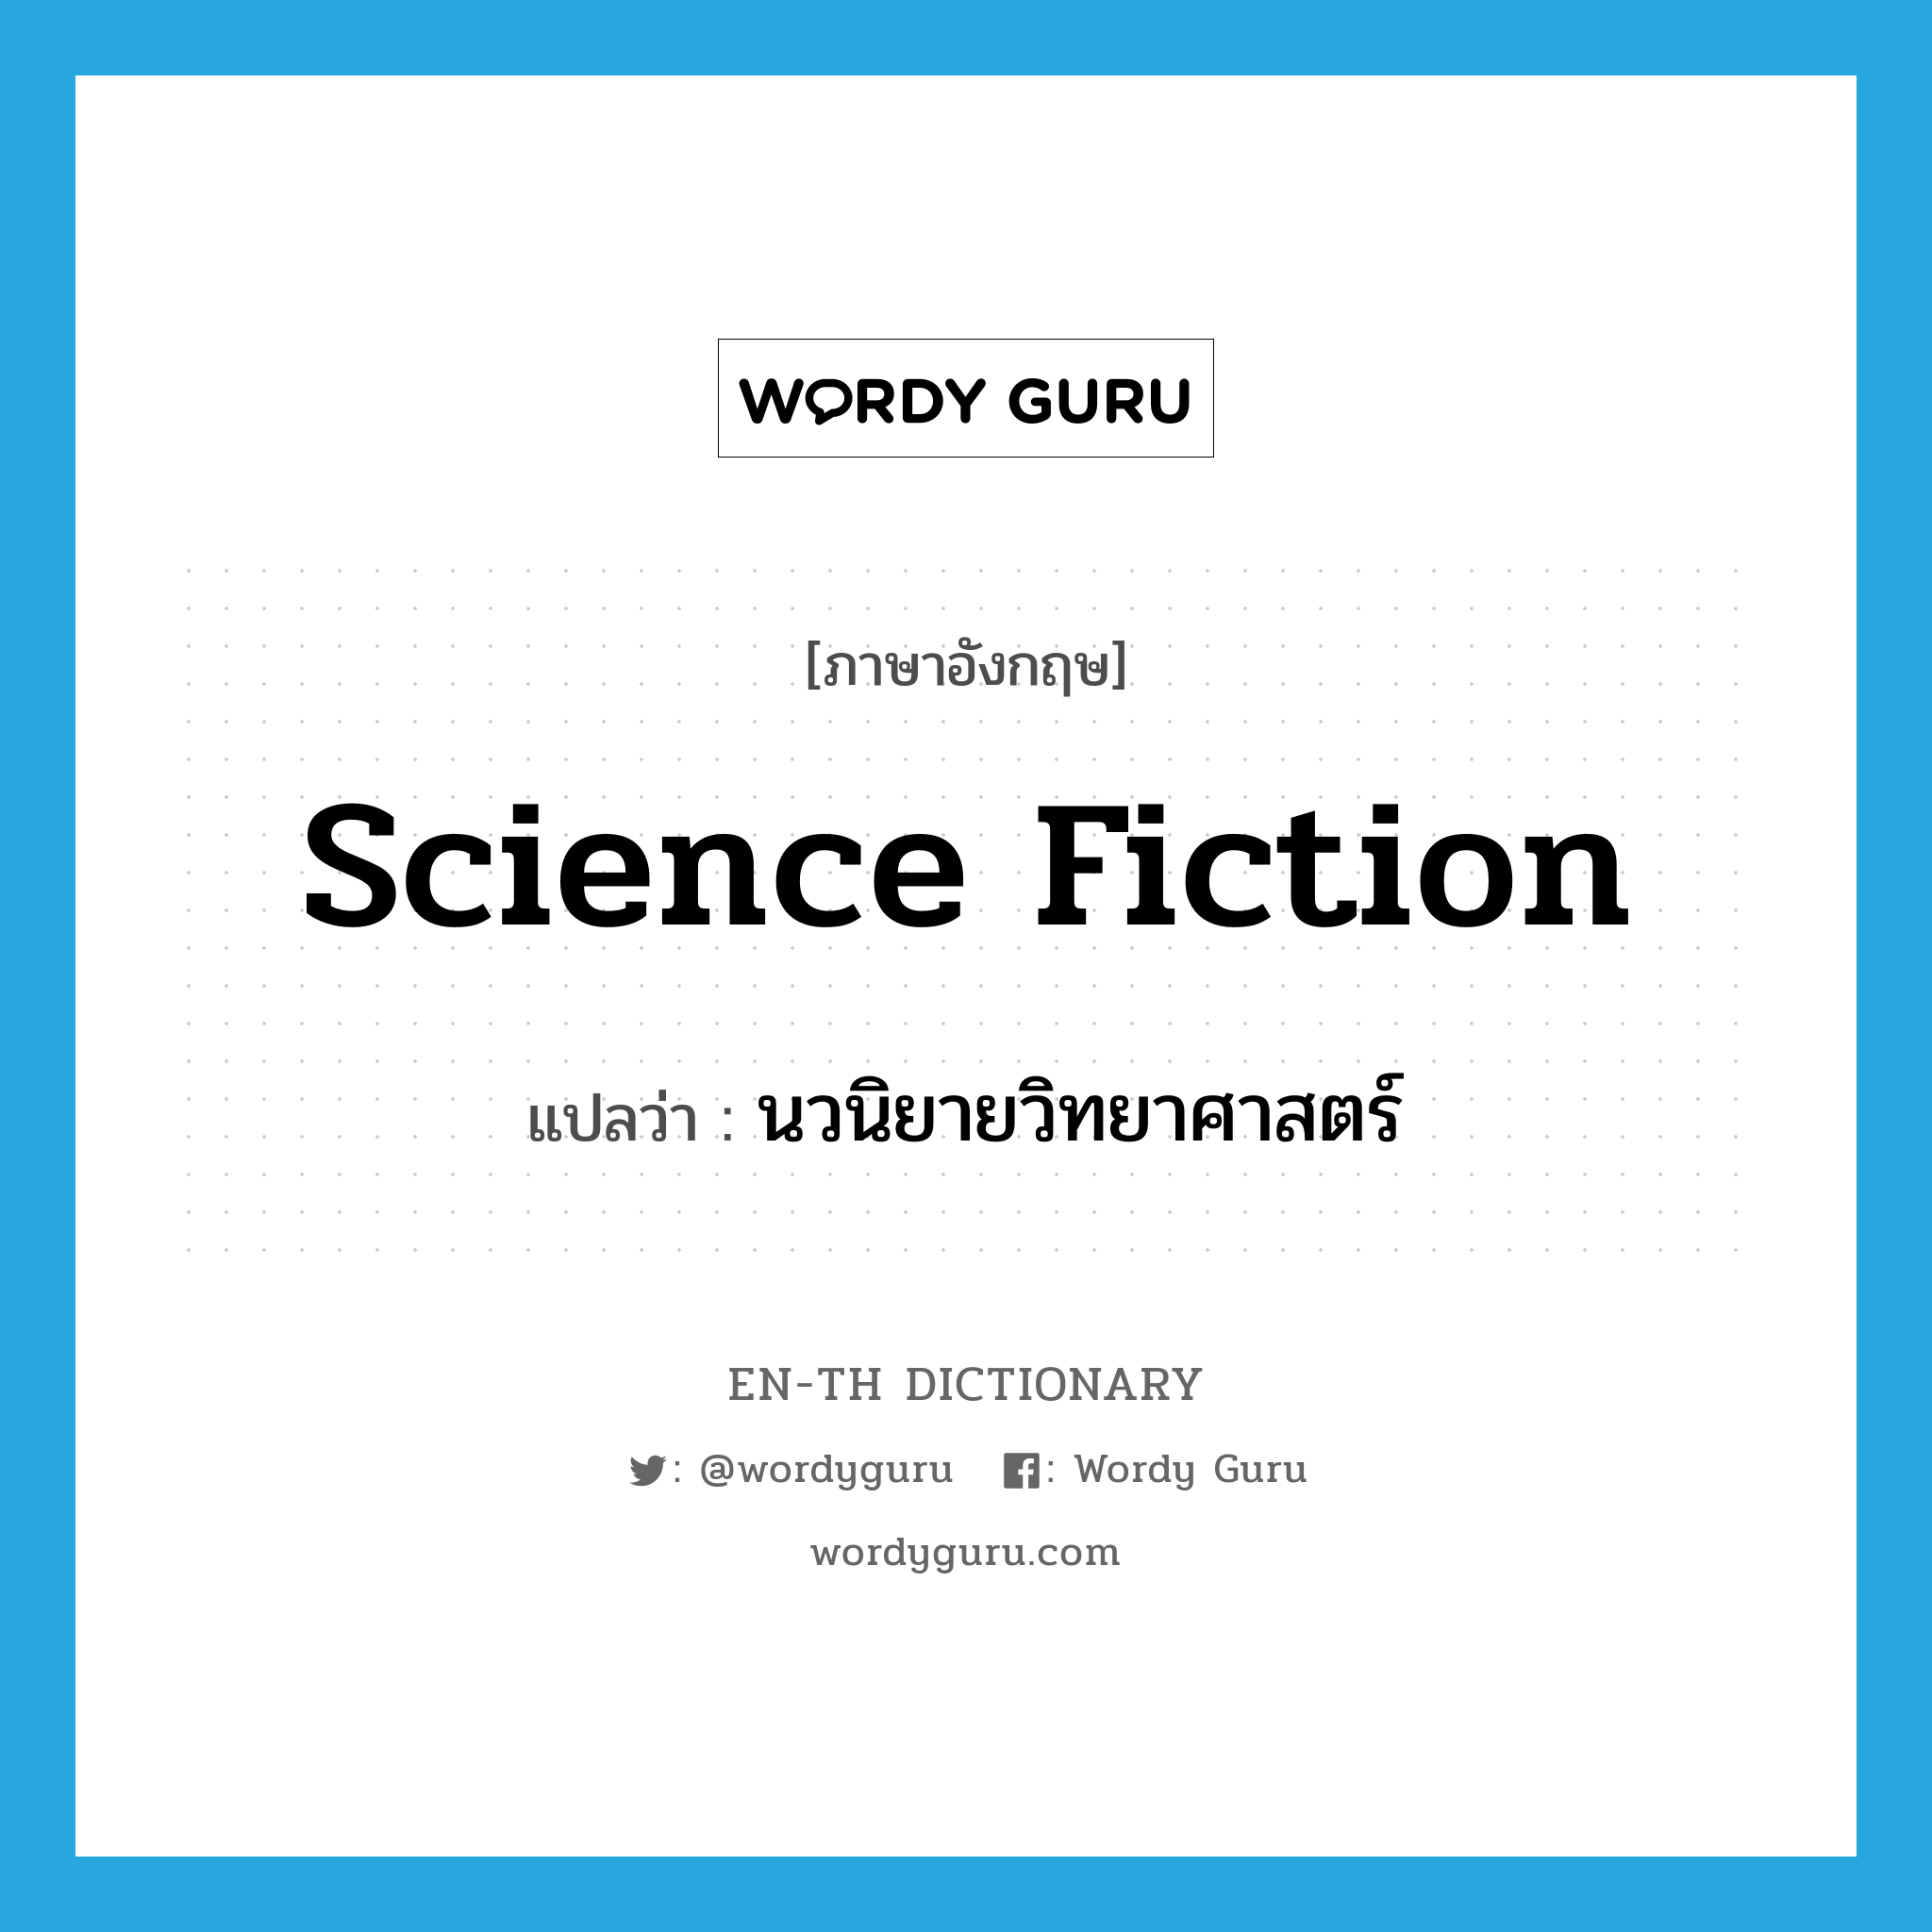 science fiction แปลว่า?, คำศัพท์ภาษาอังกฤษ science fiction แปลว่า นวนิยายวิทยาศาสตร์ ประเภท N หมวด N